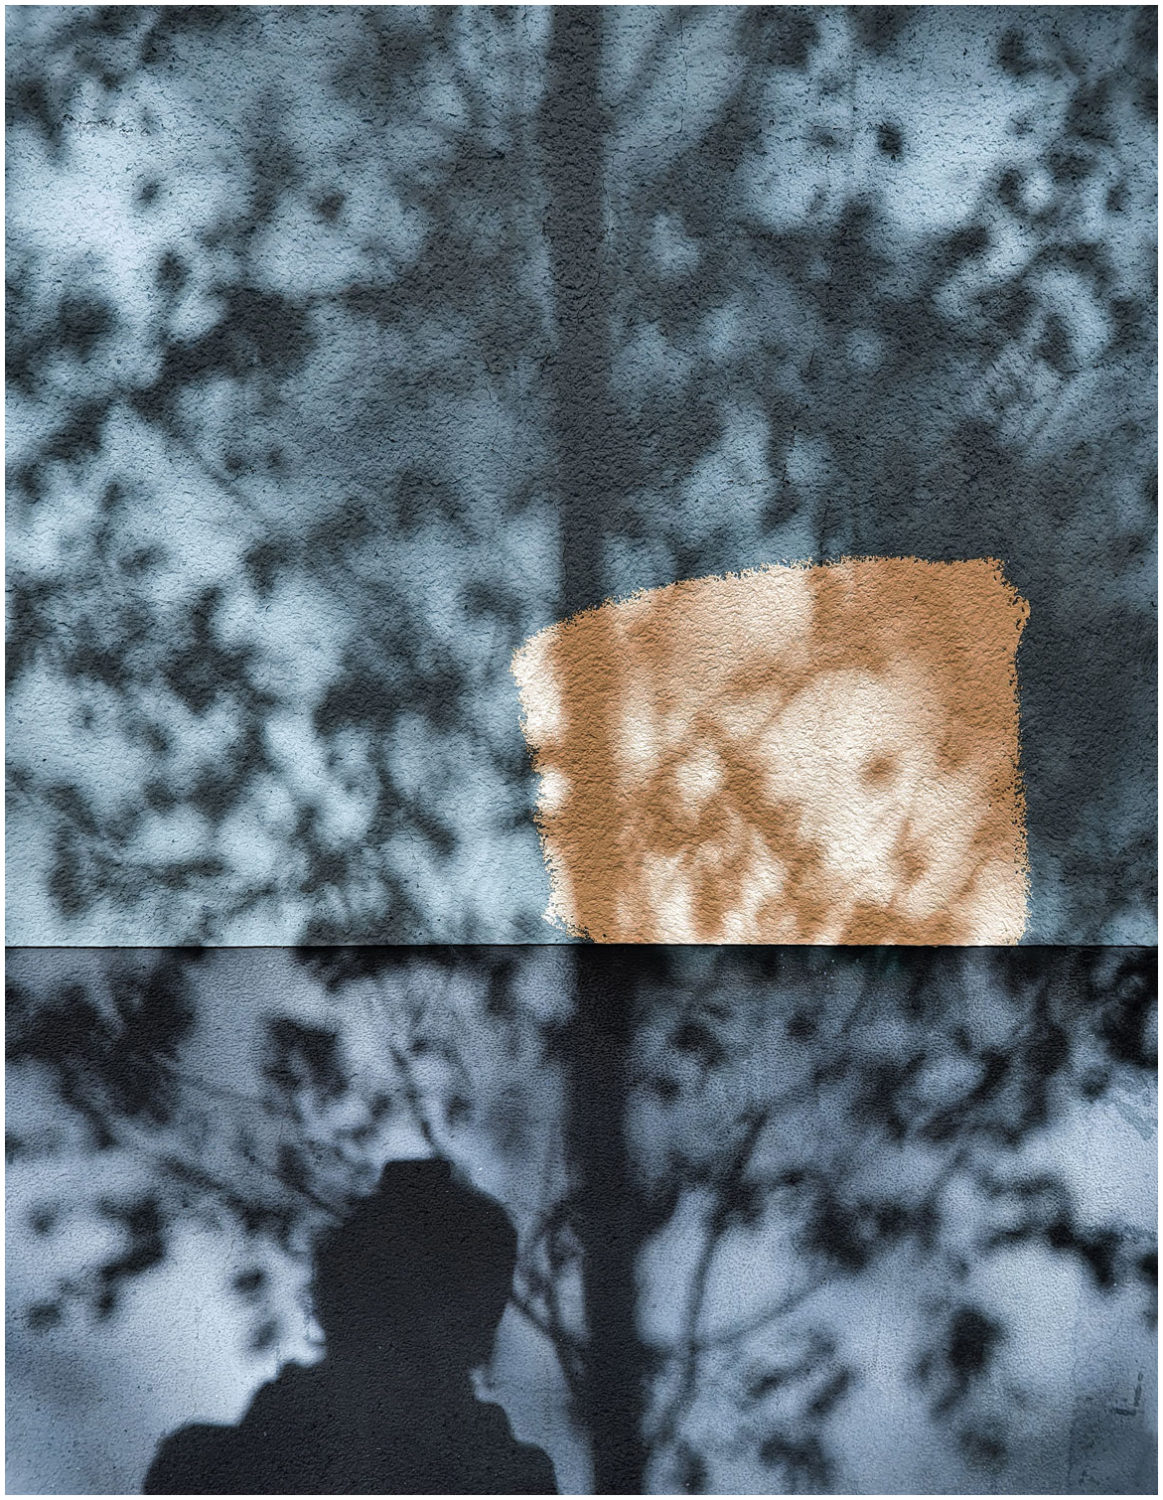 Schattenriss von einer Person (Kopf und Oberkörper) und einem Baum auf einer Hauswand